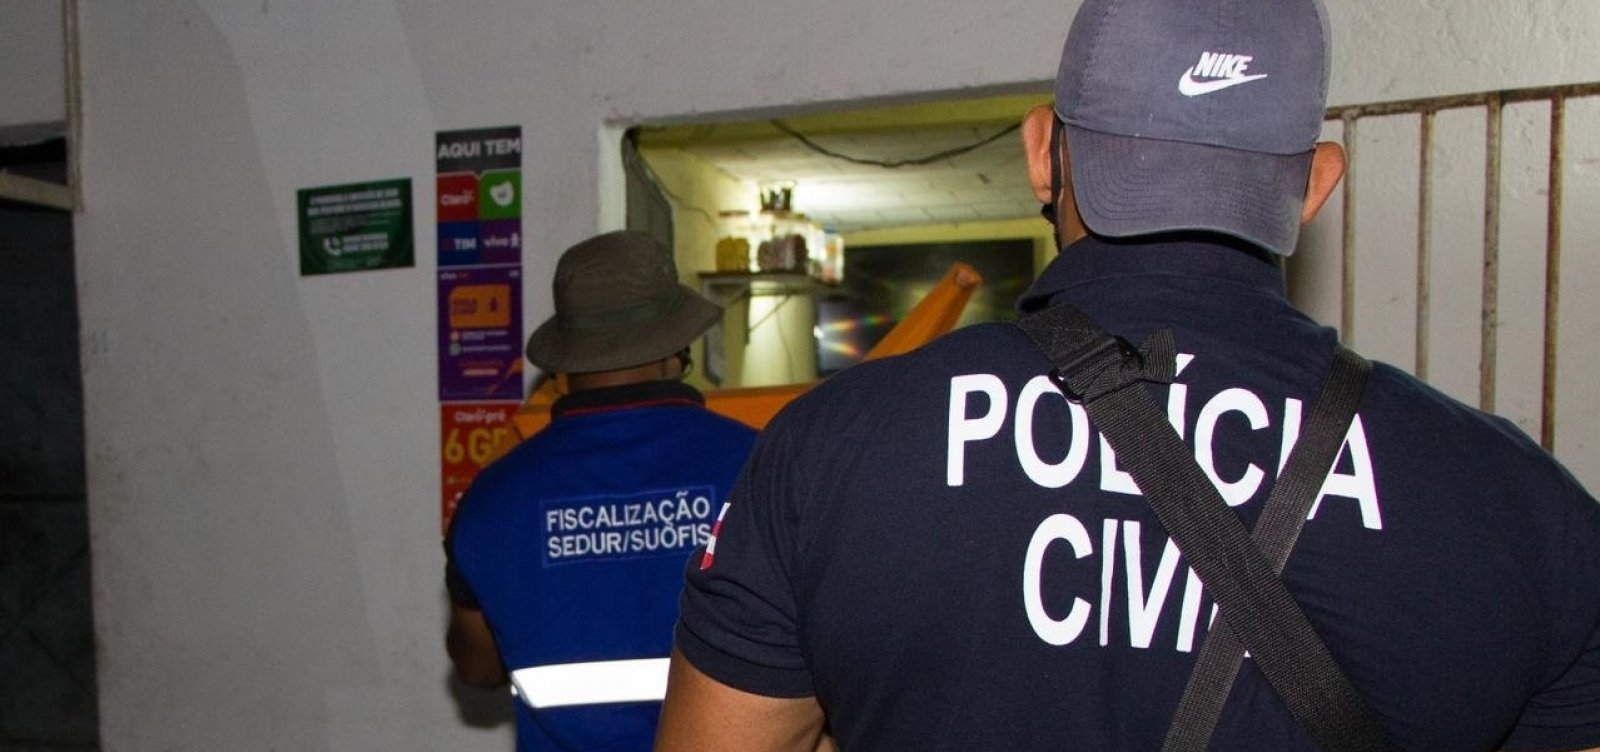 Quinze pessoas são flagradas desrespeitando toque de recolher na Bahia